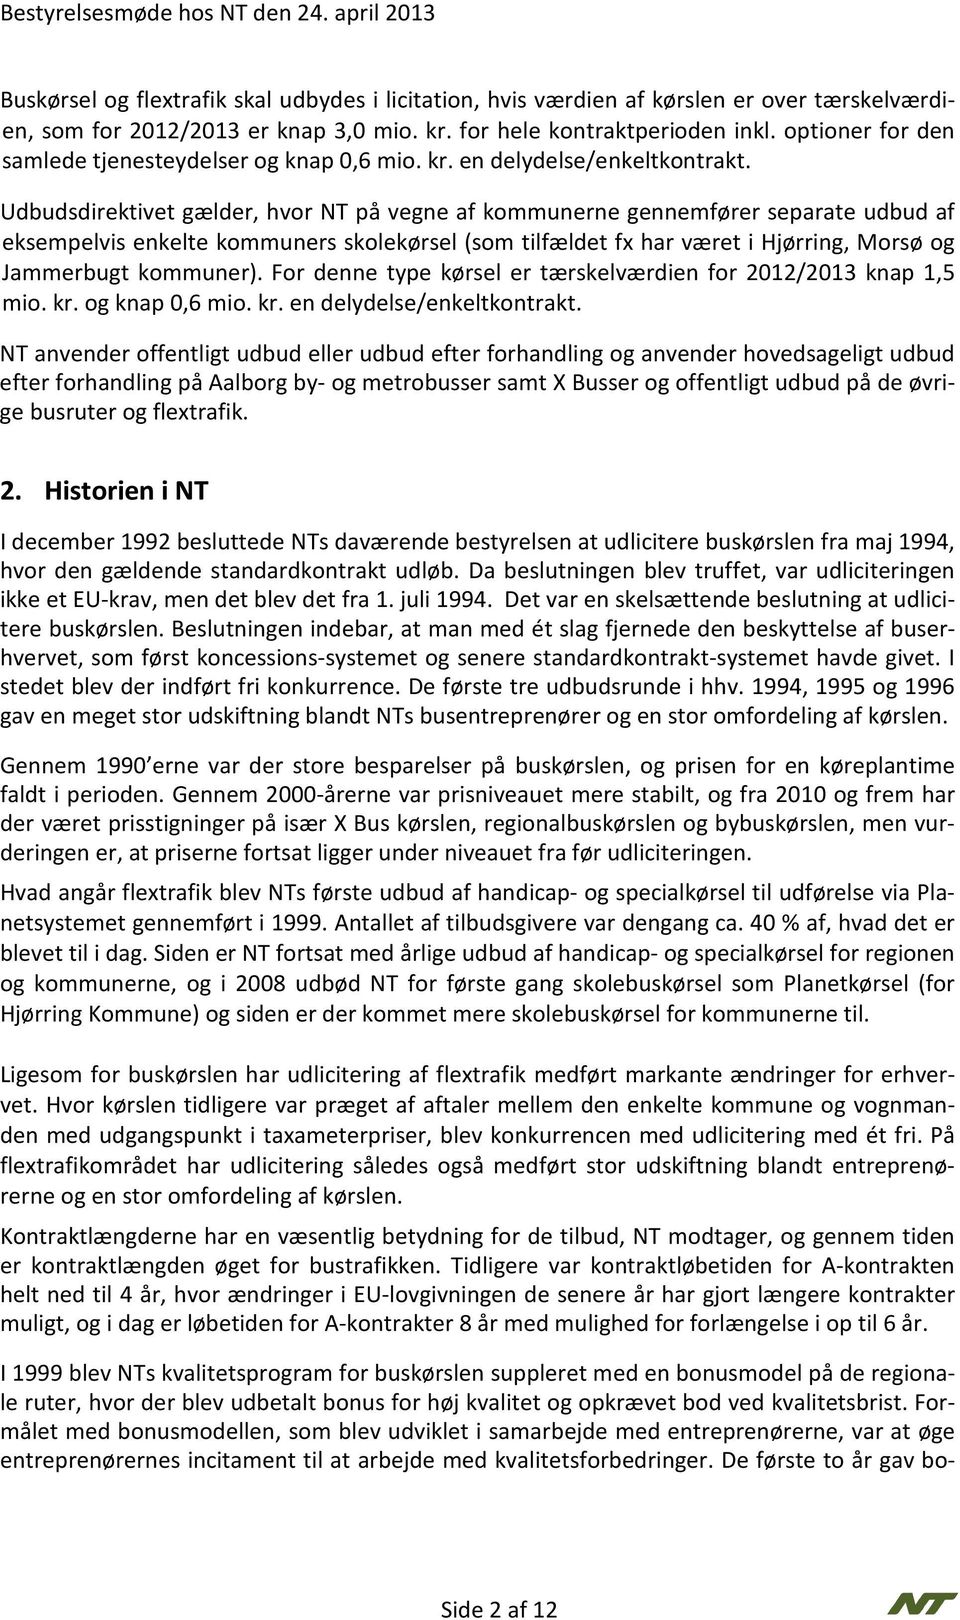 Udbudsdirektivet gælder, hvor NT på vegne af kommunerne gennemfører separate udbud af eksempelvis enkelte kommuners skolekørsel (som tilfældet fx har været i Hjørring, Morsø og Jammerbugt kommuner).